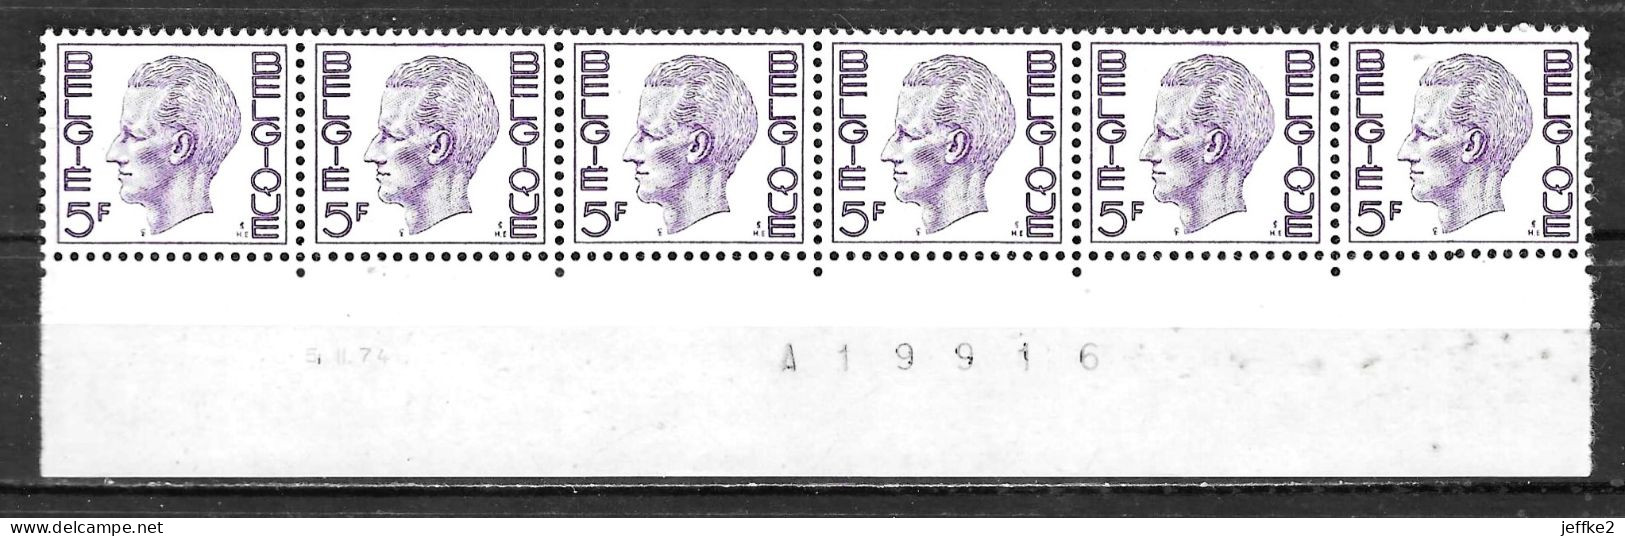 R51**  Baudouin Elström - Bonne Valeur - MNH** - LOOK!!!! - Coil Stamps